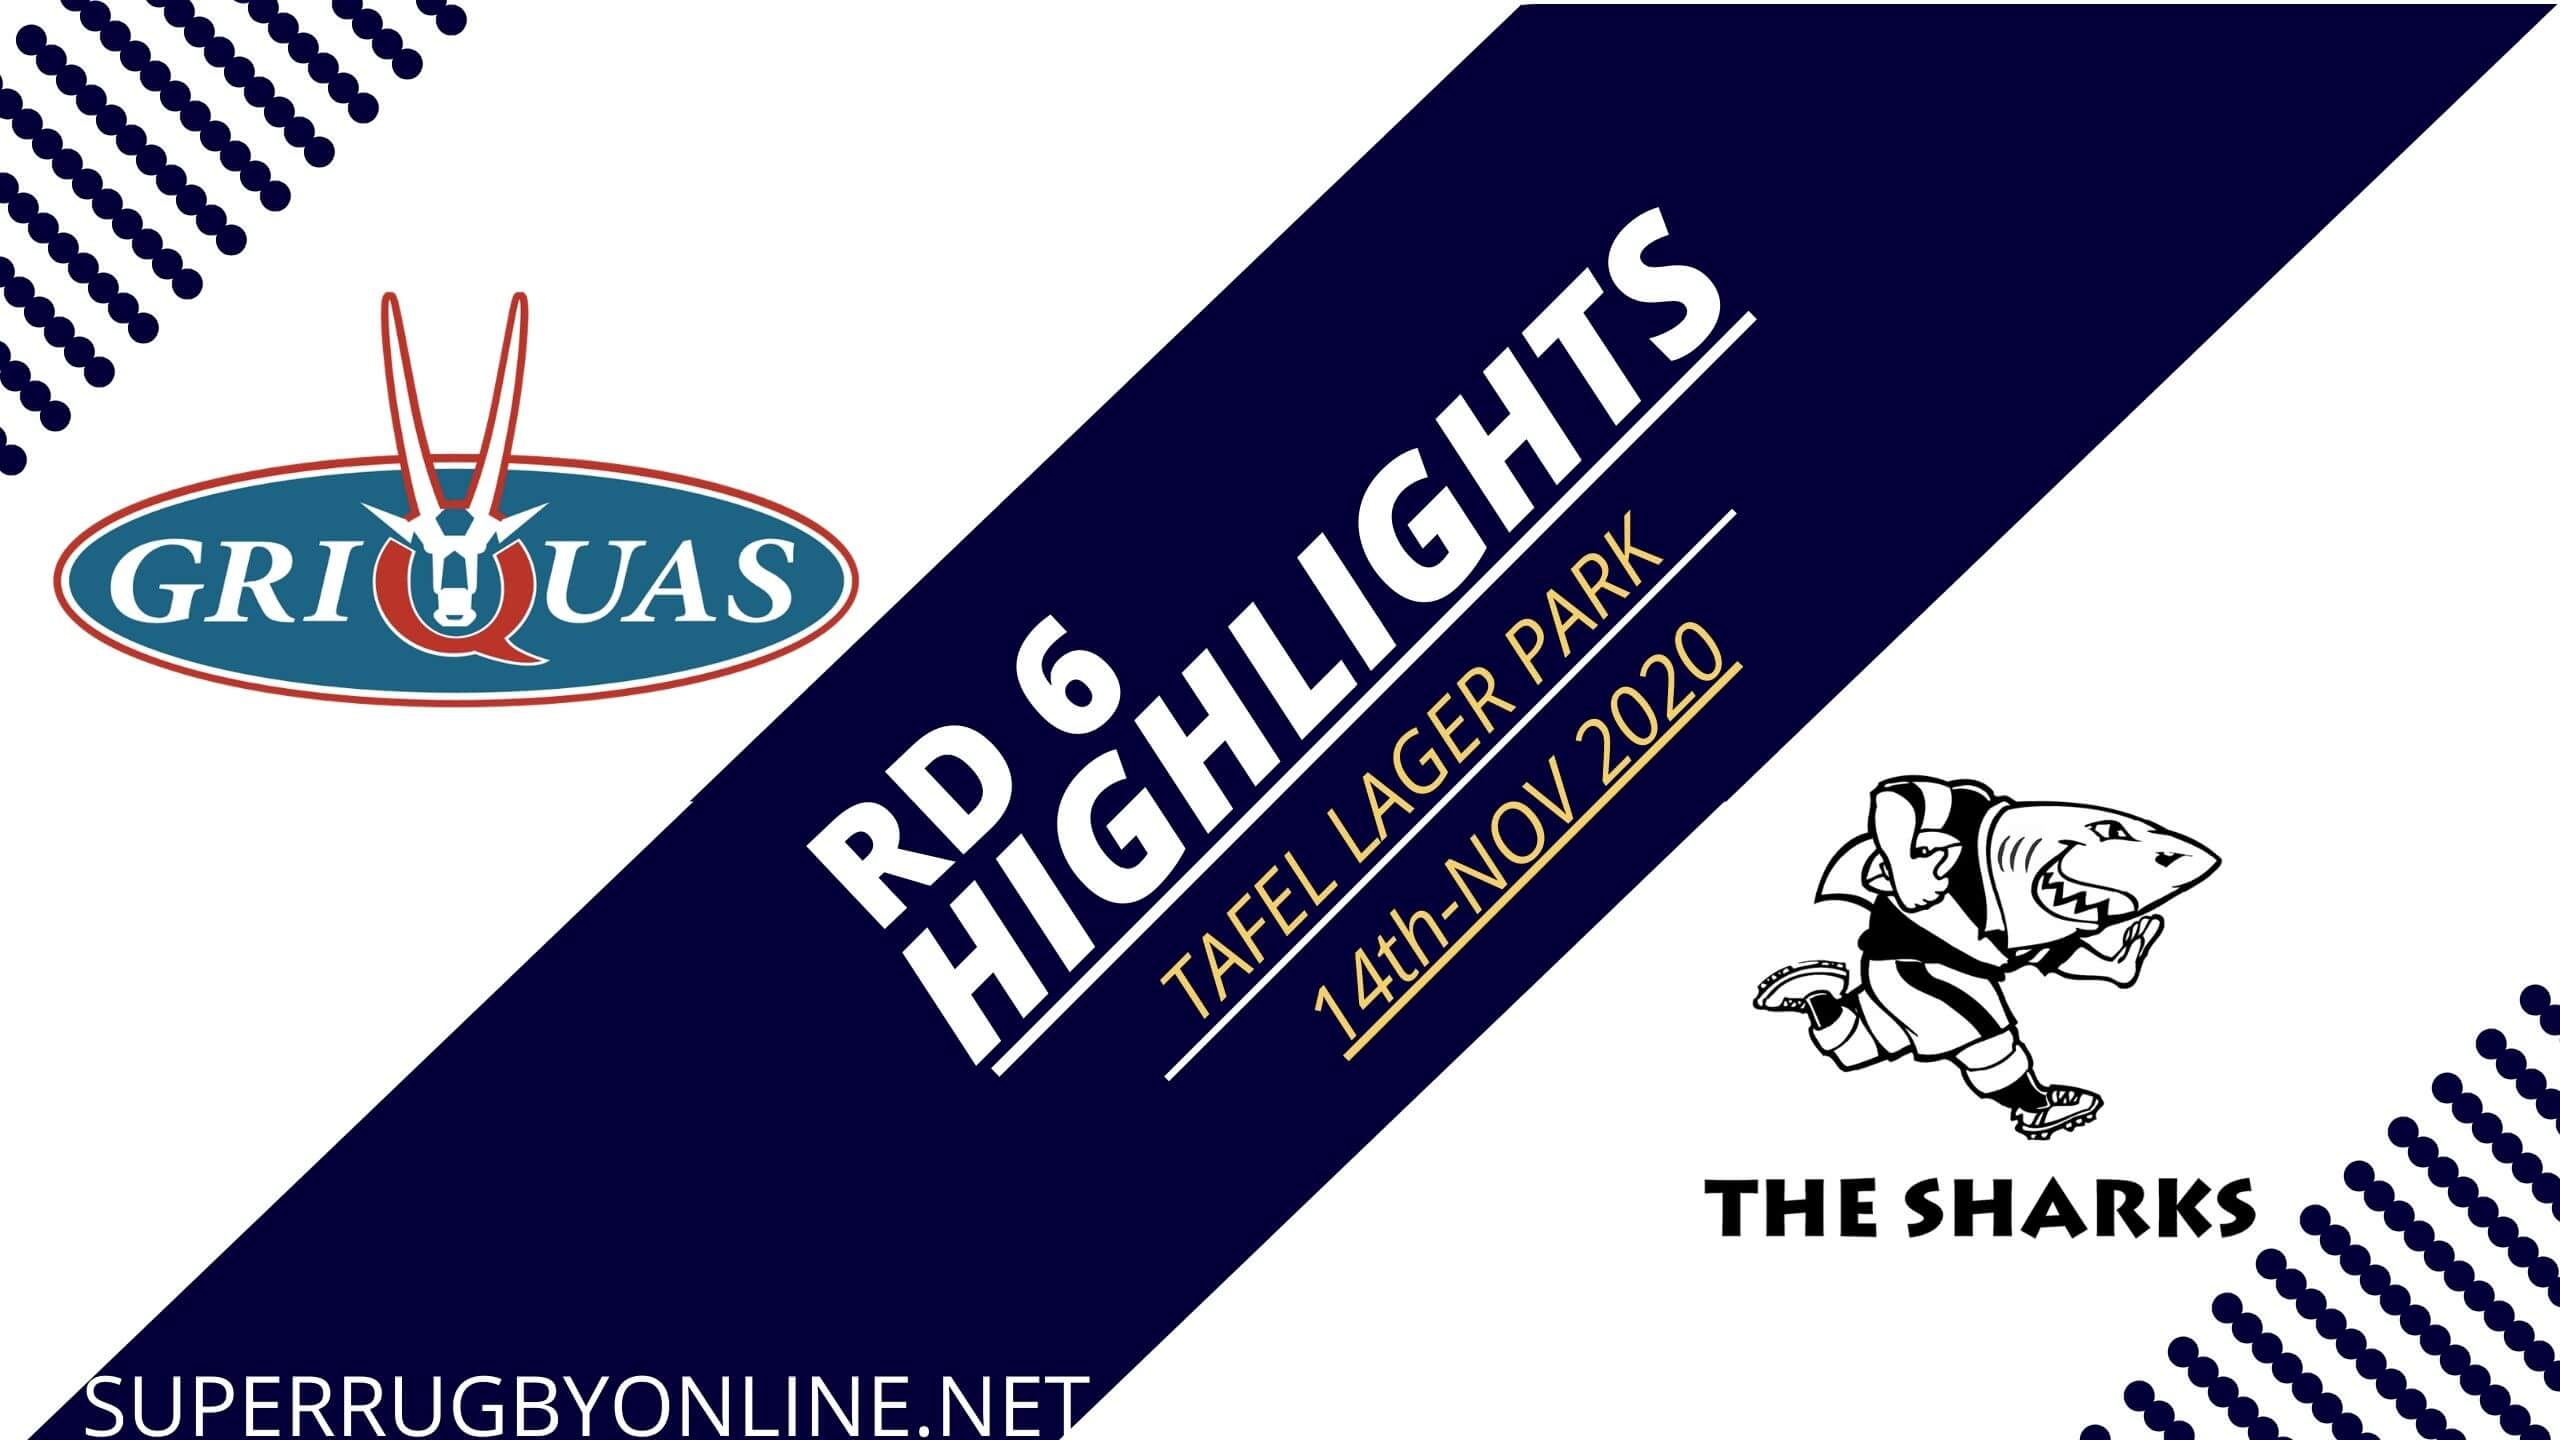 Griquas vs Sharks Rd 6 Highlights 2020